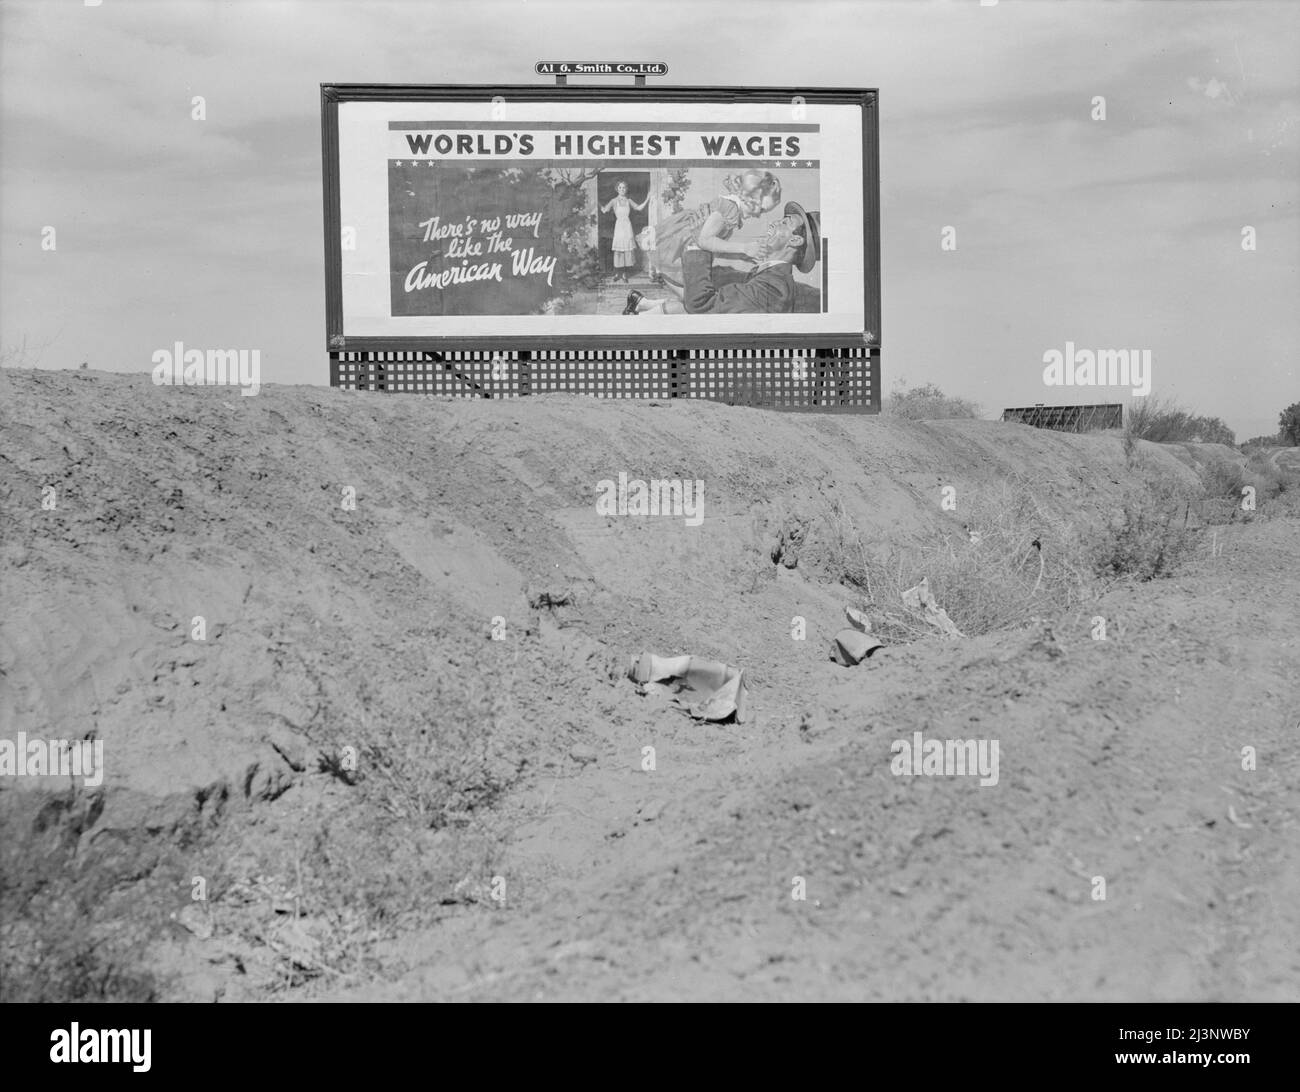 Billboard sulla U.S. Highway 99 in California. Campagna pubblicitaria nazionale sponsorizzata dall'Associazione Nazionale dei Produttori. [Famiglia bianca - padre che ritorna dal lavoro durante la Grande depressione, un periodo di elevata disoccupazione: 'I salari più alti del mondo - non c'è modo come la via americana']. Foto Stock